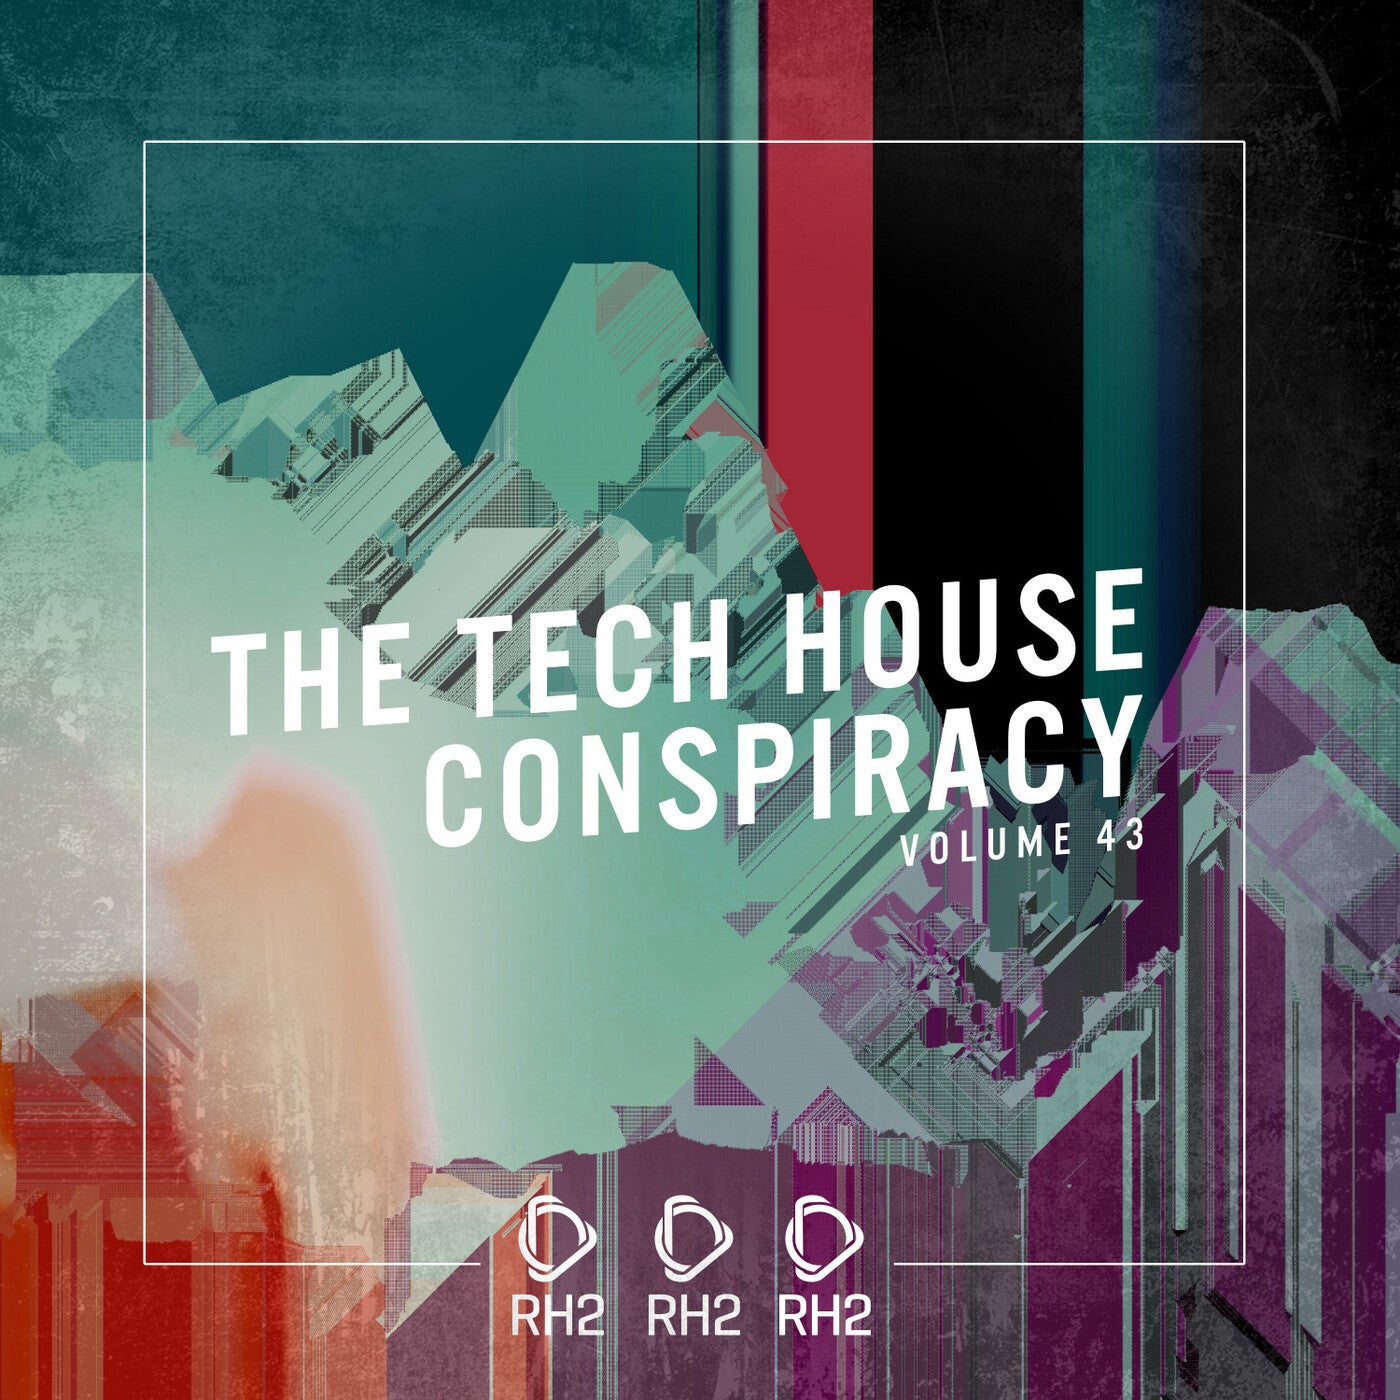 The Tech House Conspiracy Vol. 43